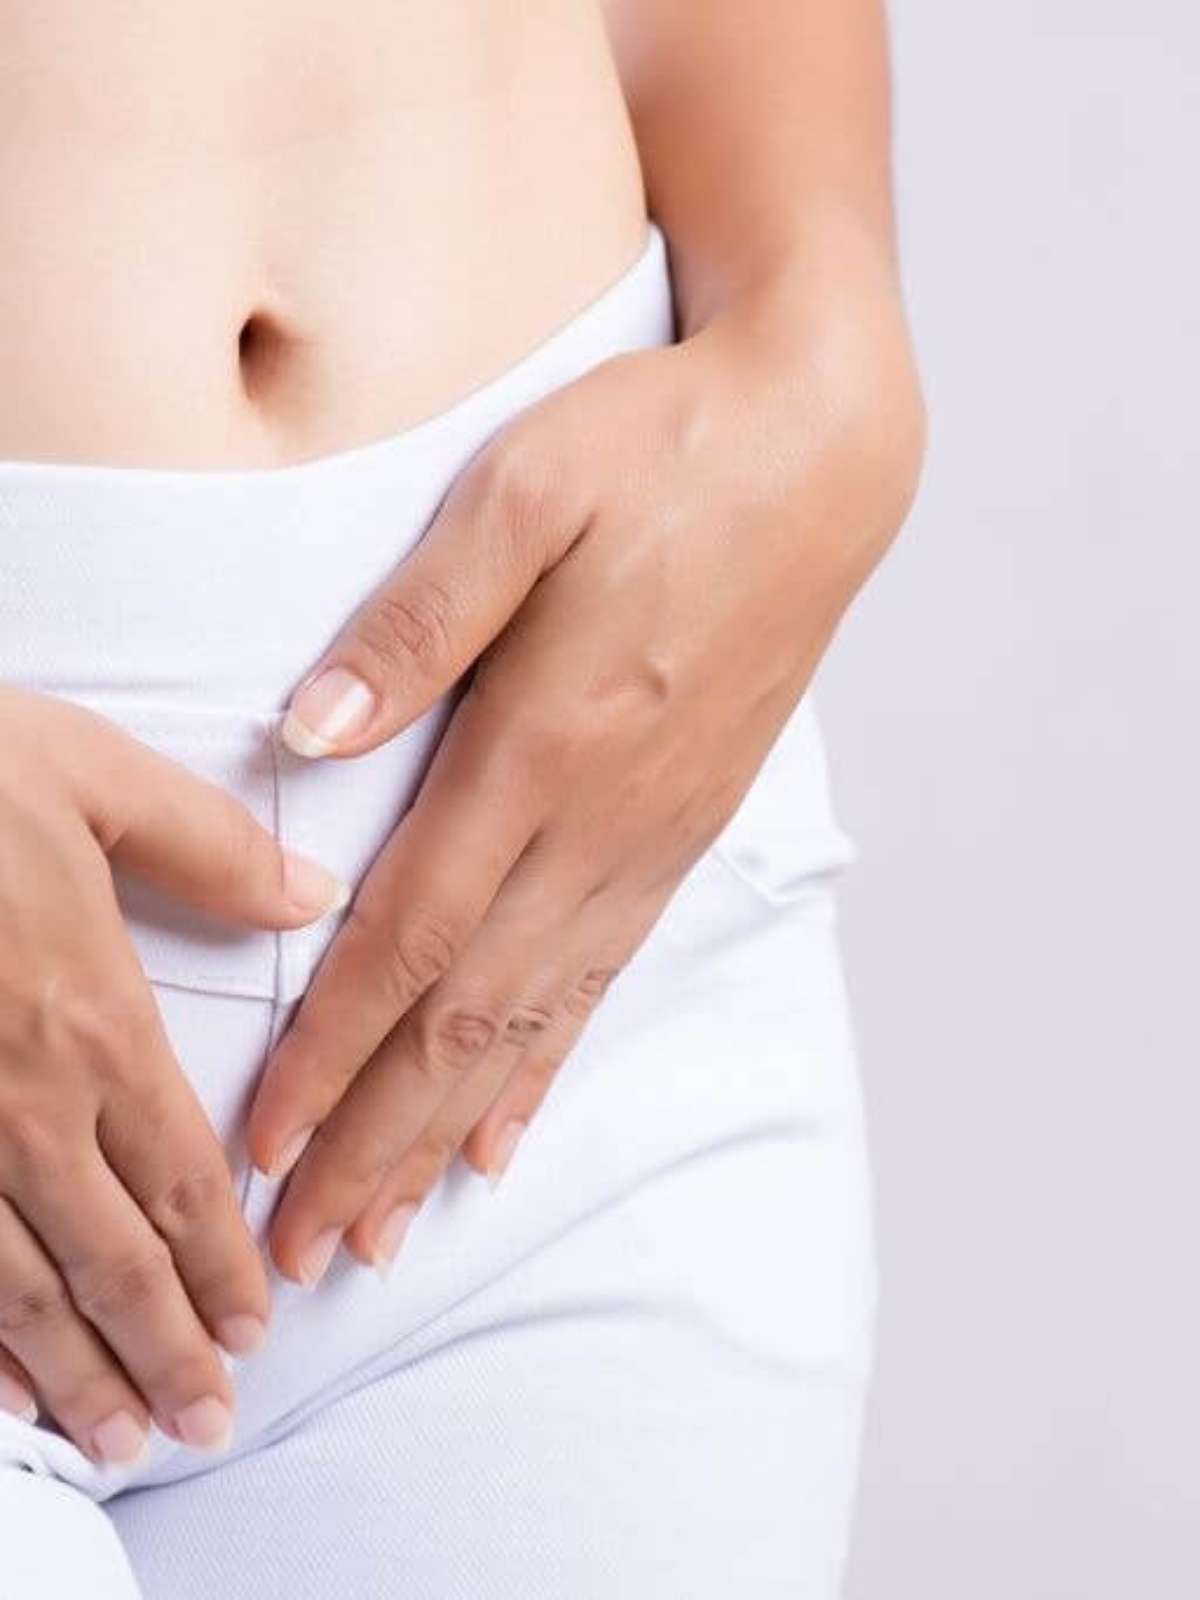 Corrimento branco vaginal sinaliza chance de engravidar